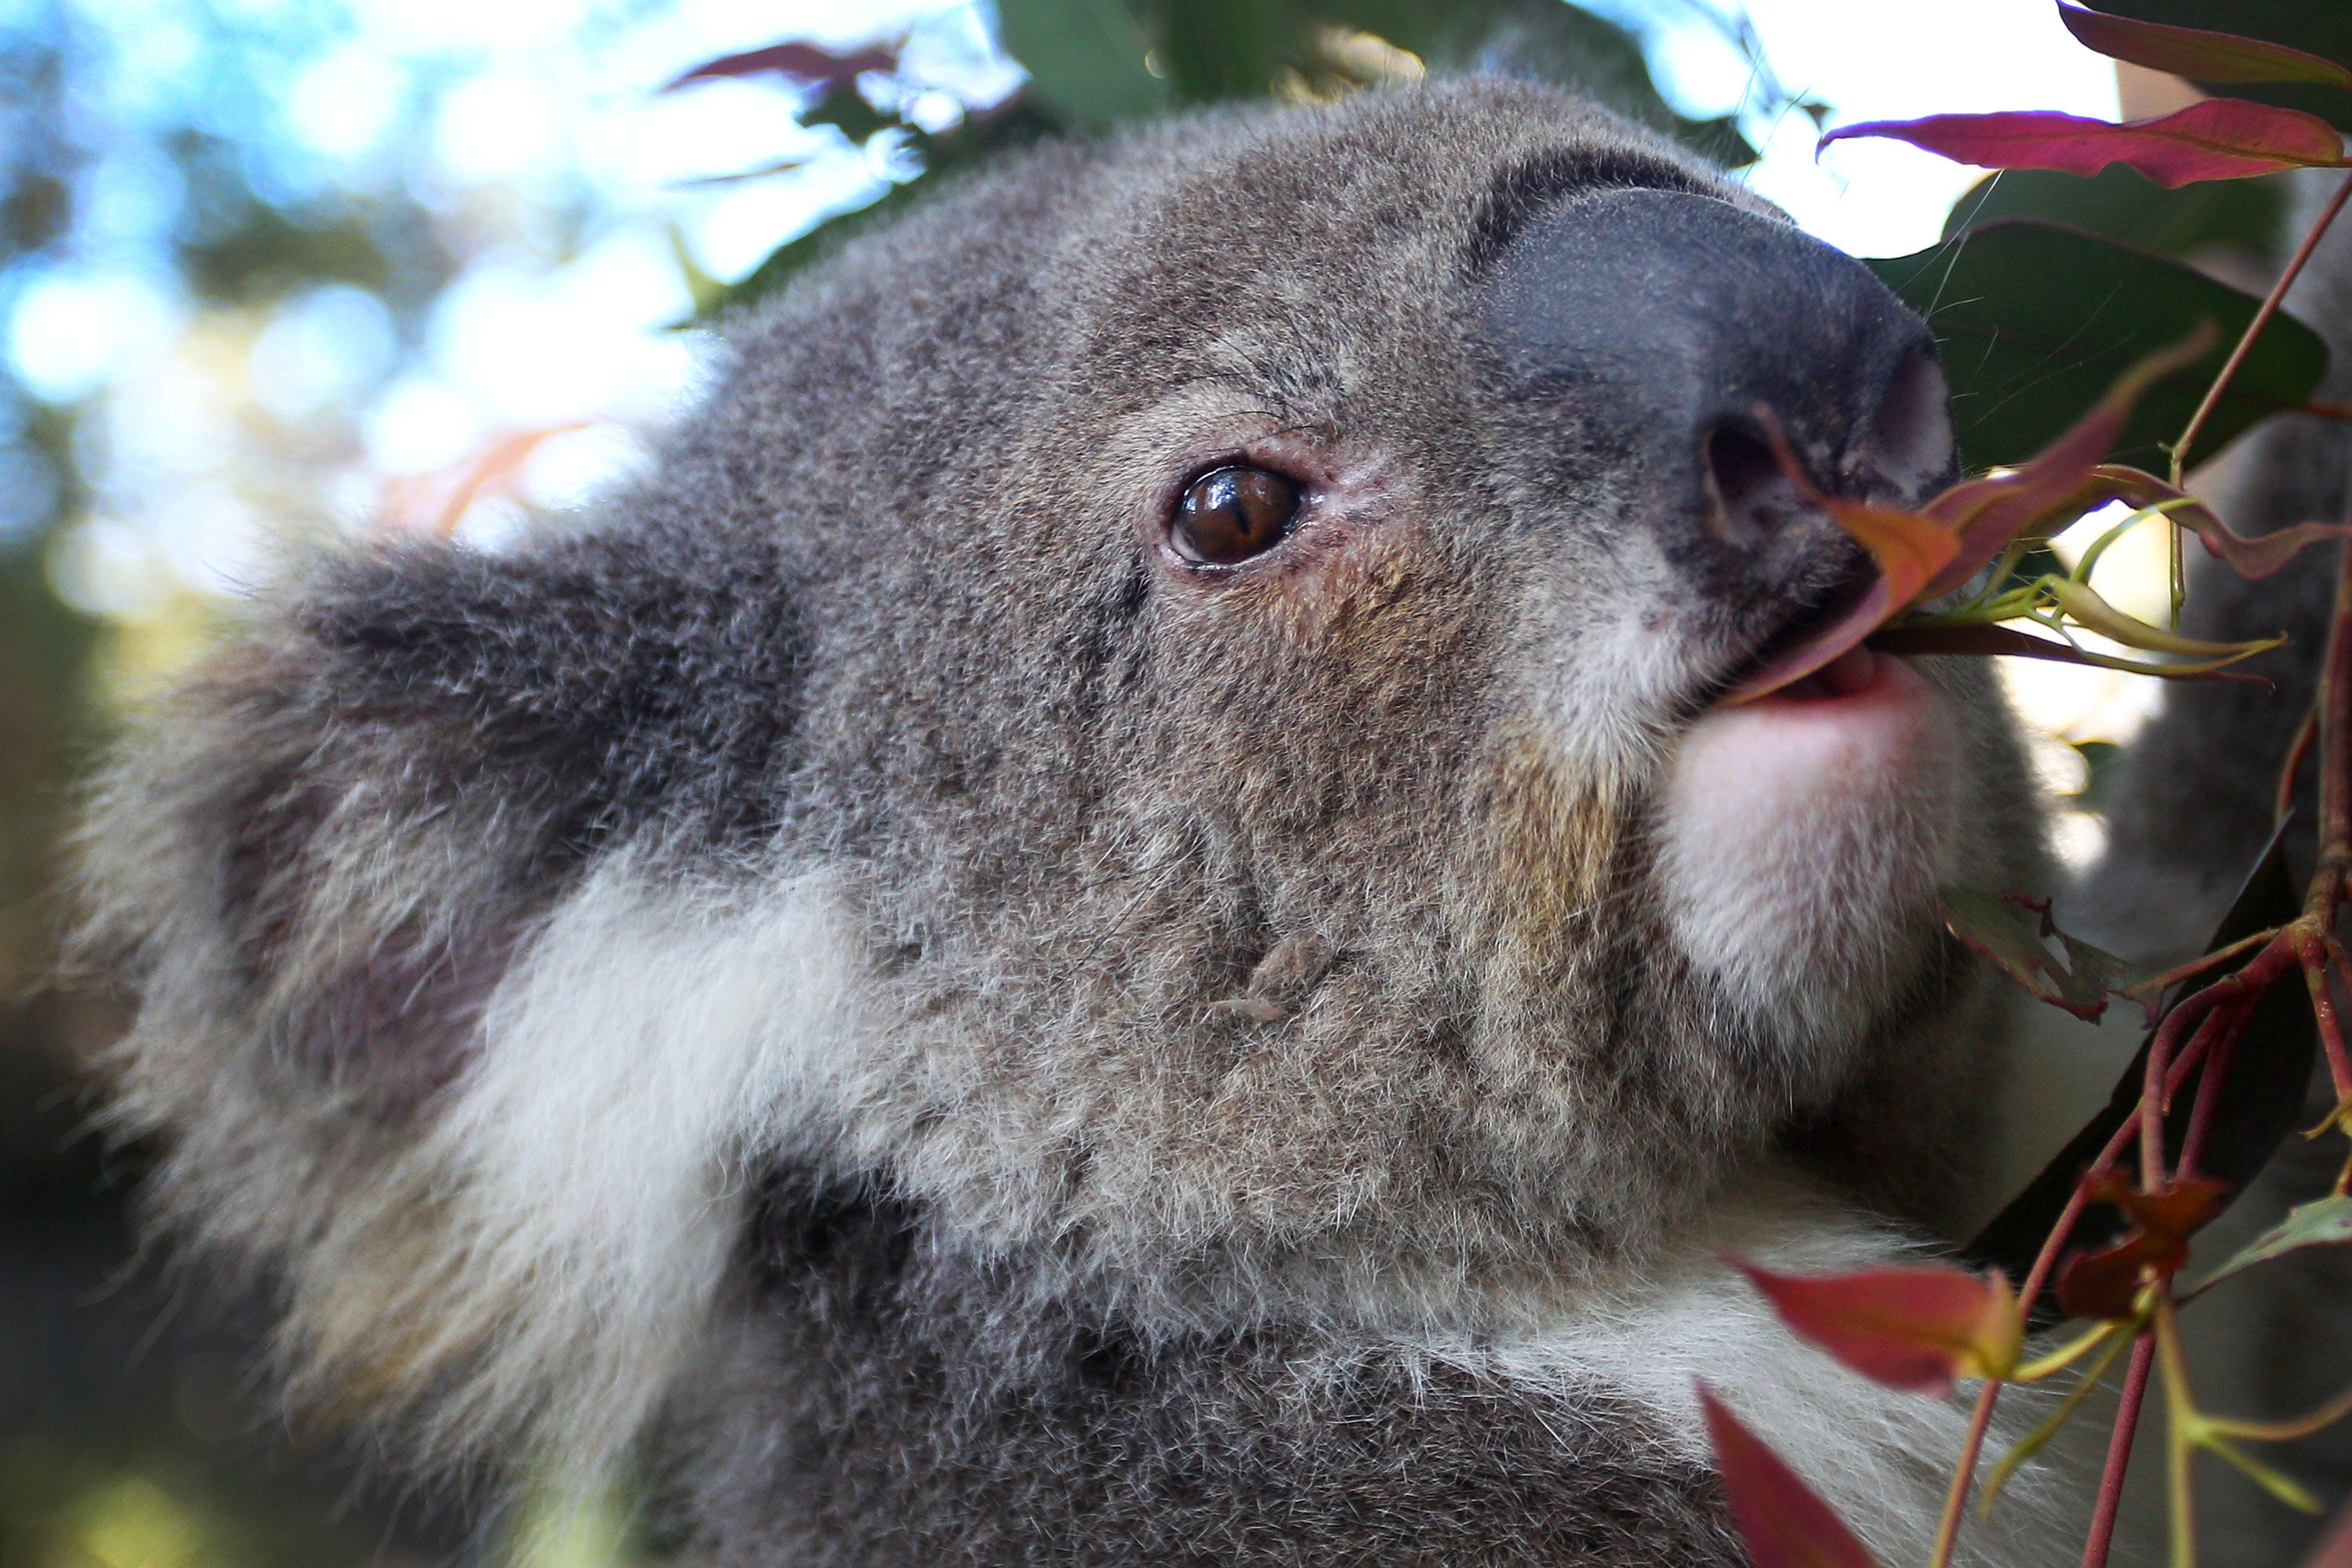 5 ways to help koalas this Save the Koala Day, WWF-Australia